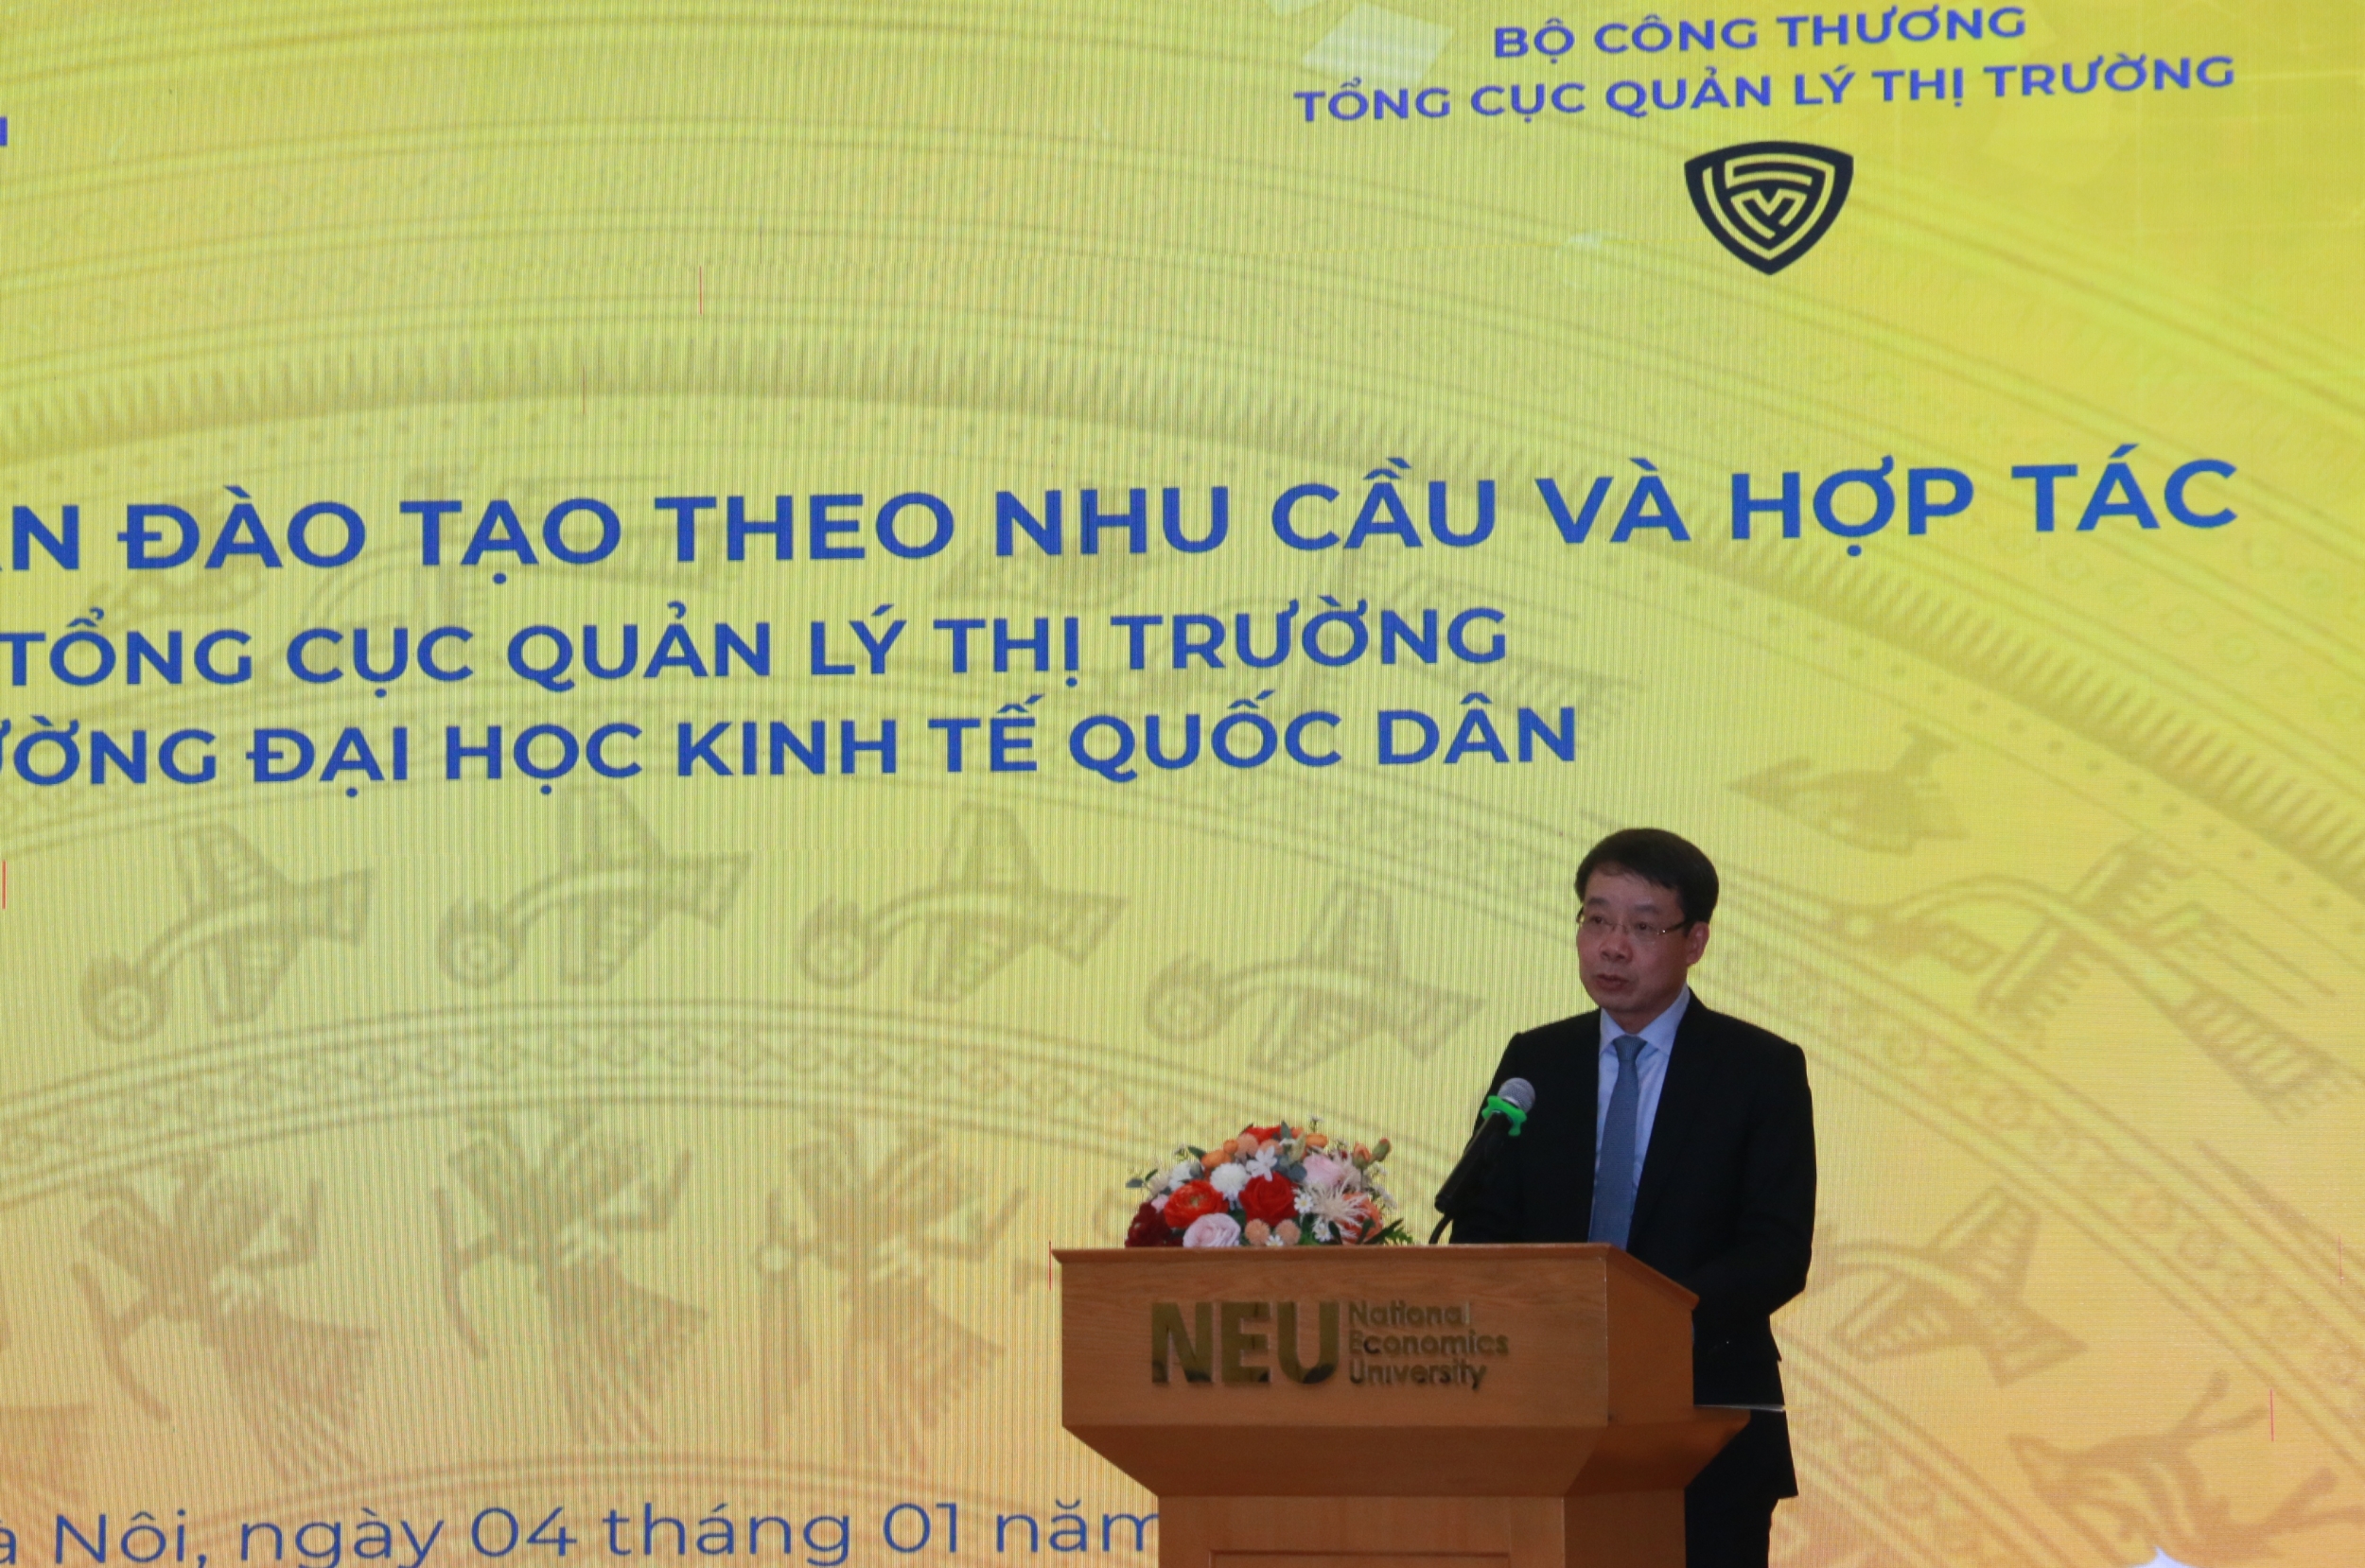 Việt Nam có Đại học đào tạo chính quy về Quản lý thị trường